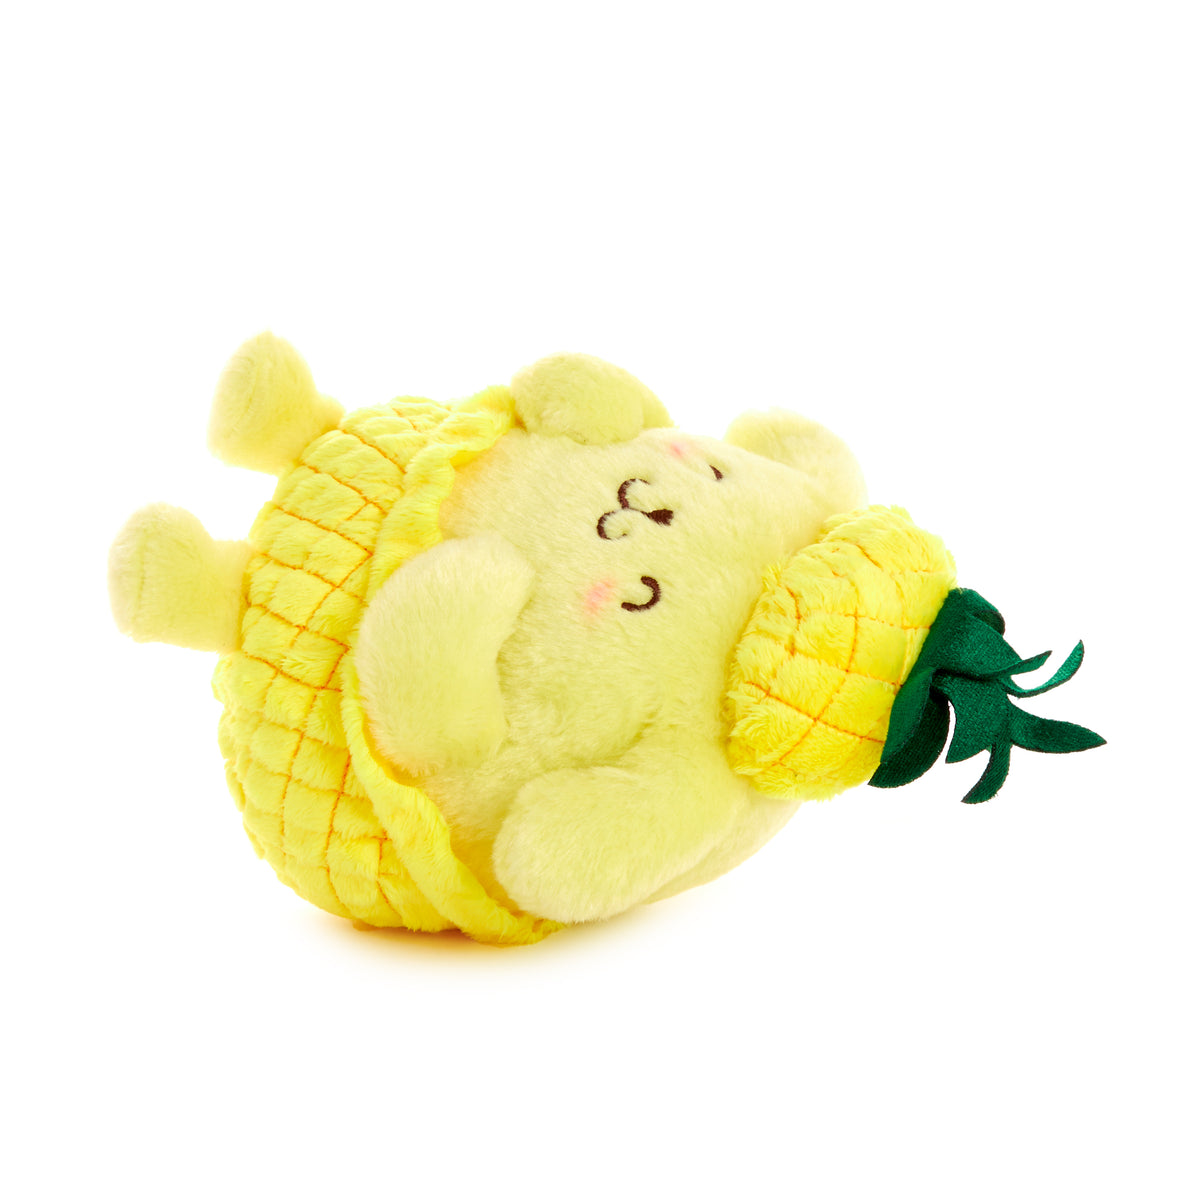 Hello Kitty® Plush 6 - Pineapple